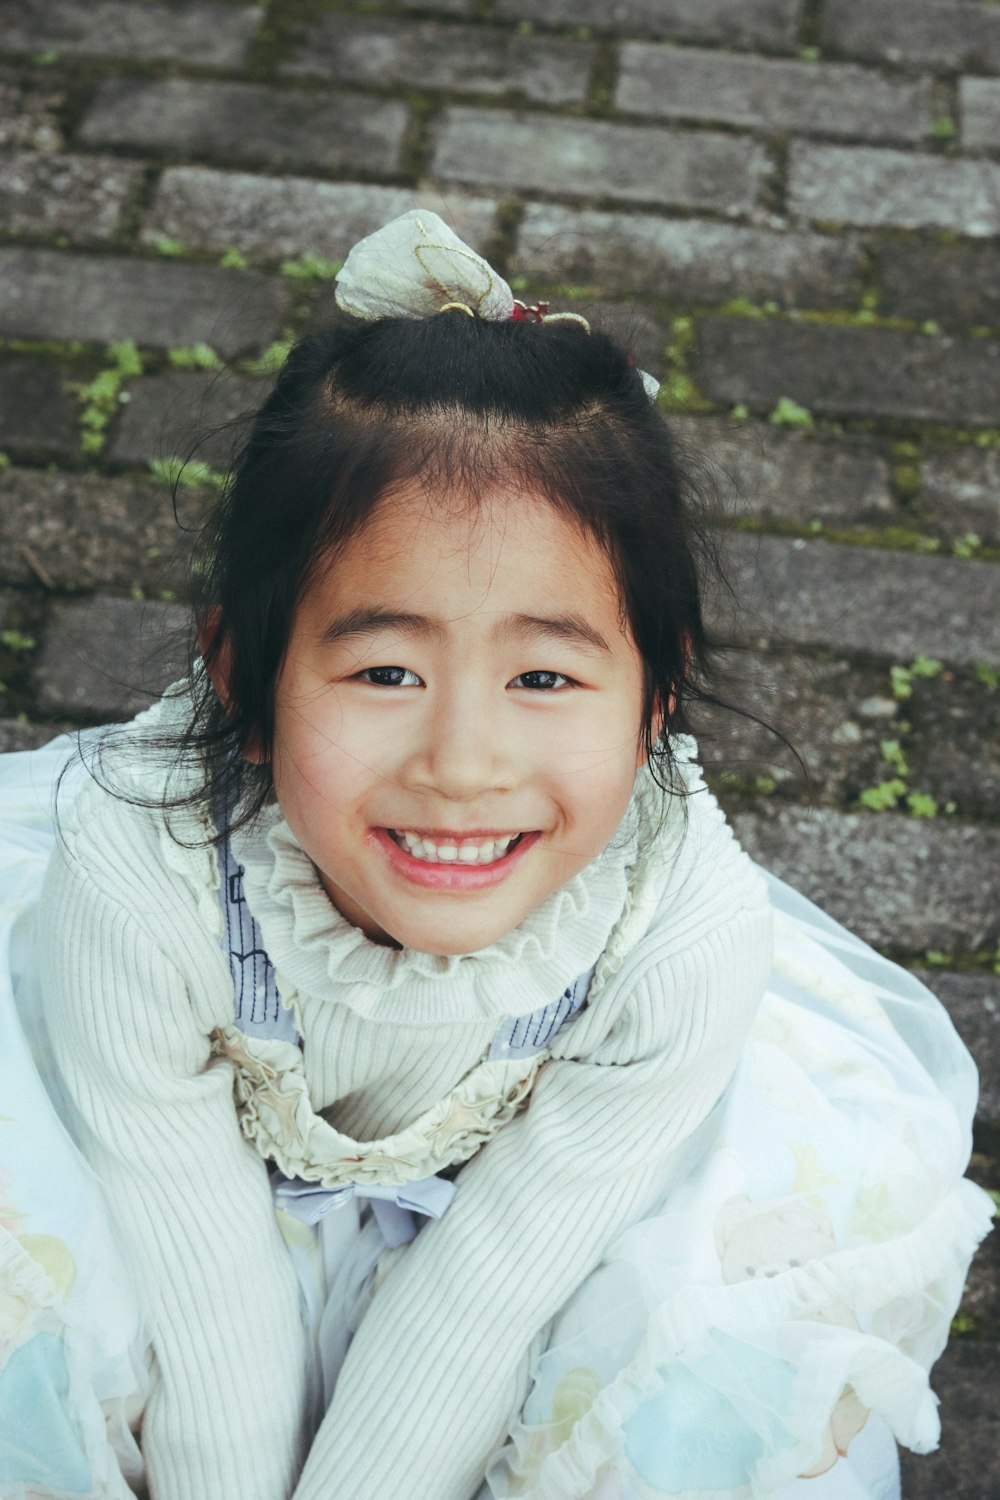 una niña sentada en el suelo sonriendo